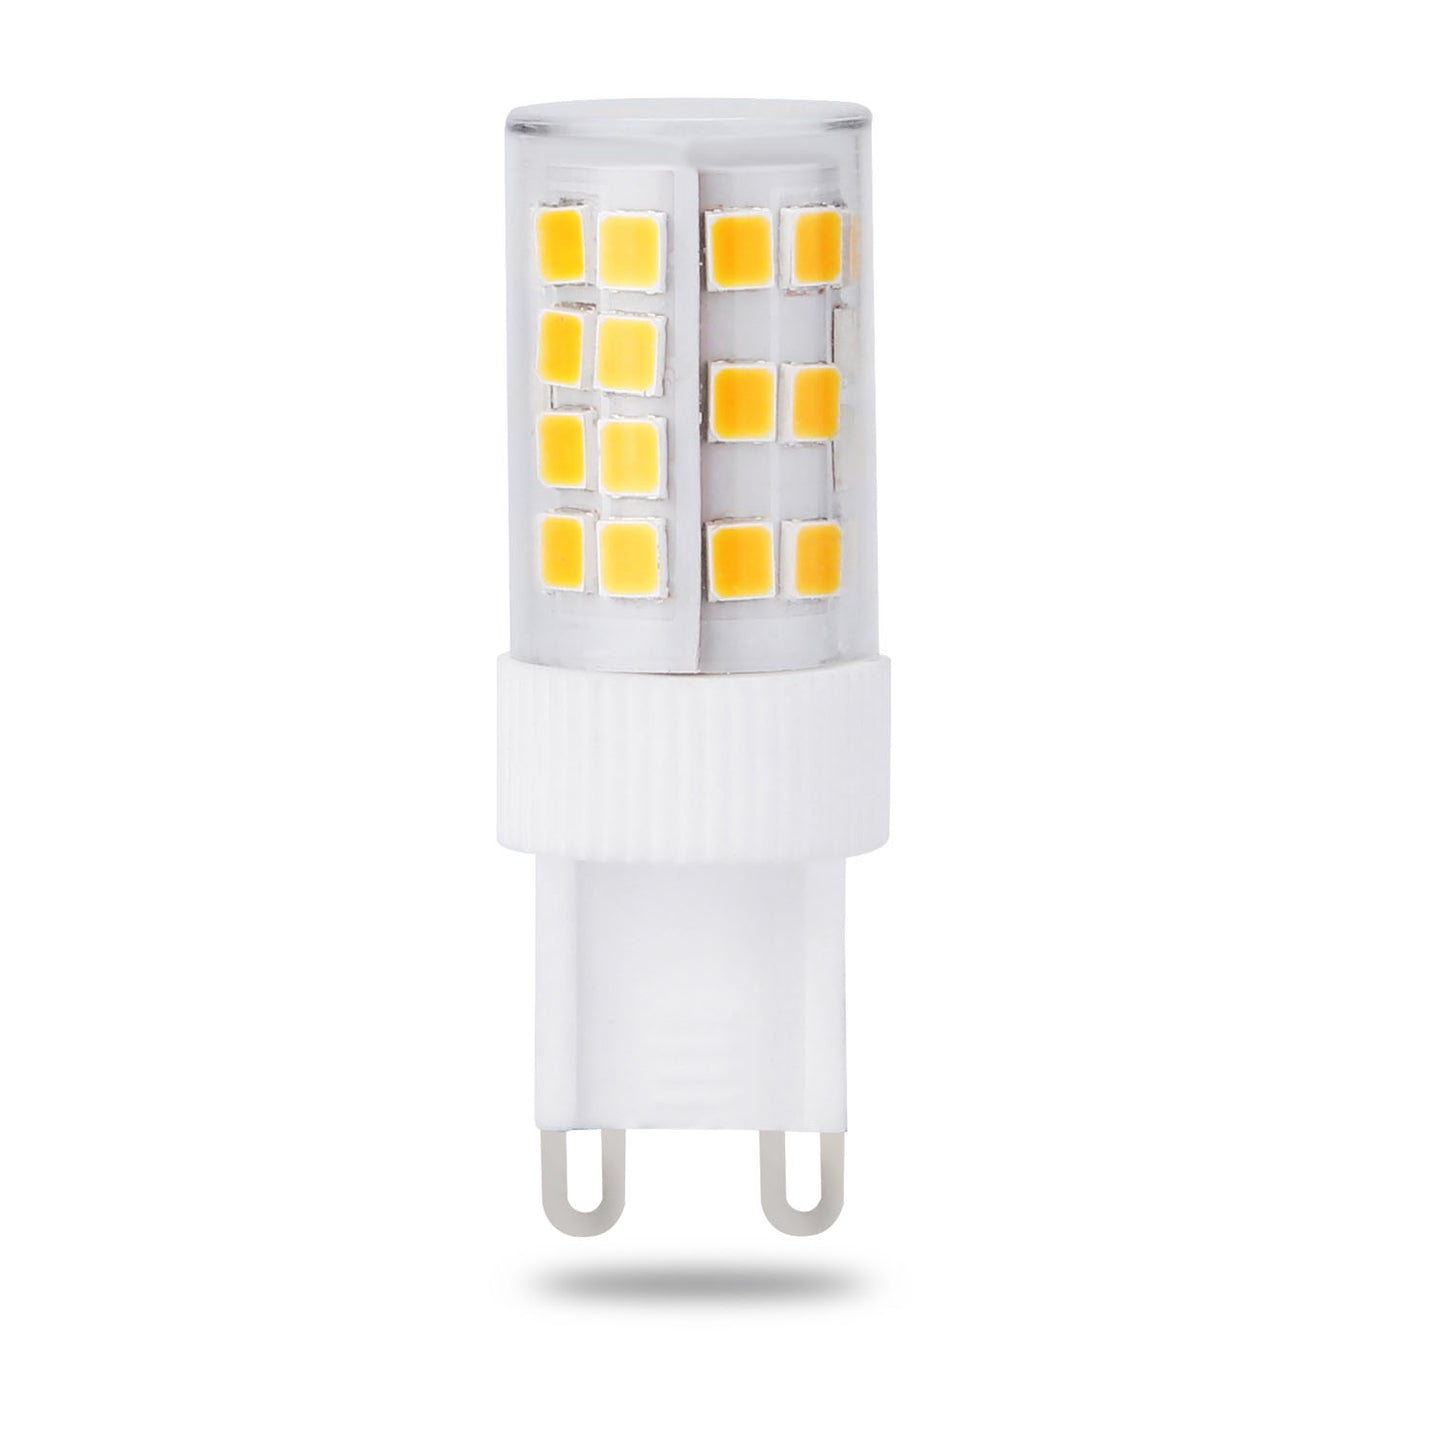 LED G9 Lamp - Daylight White